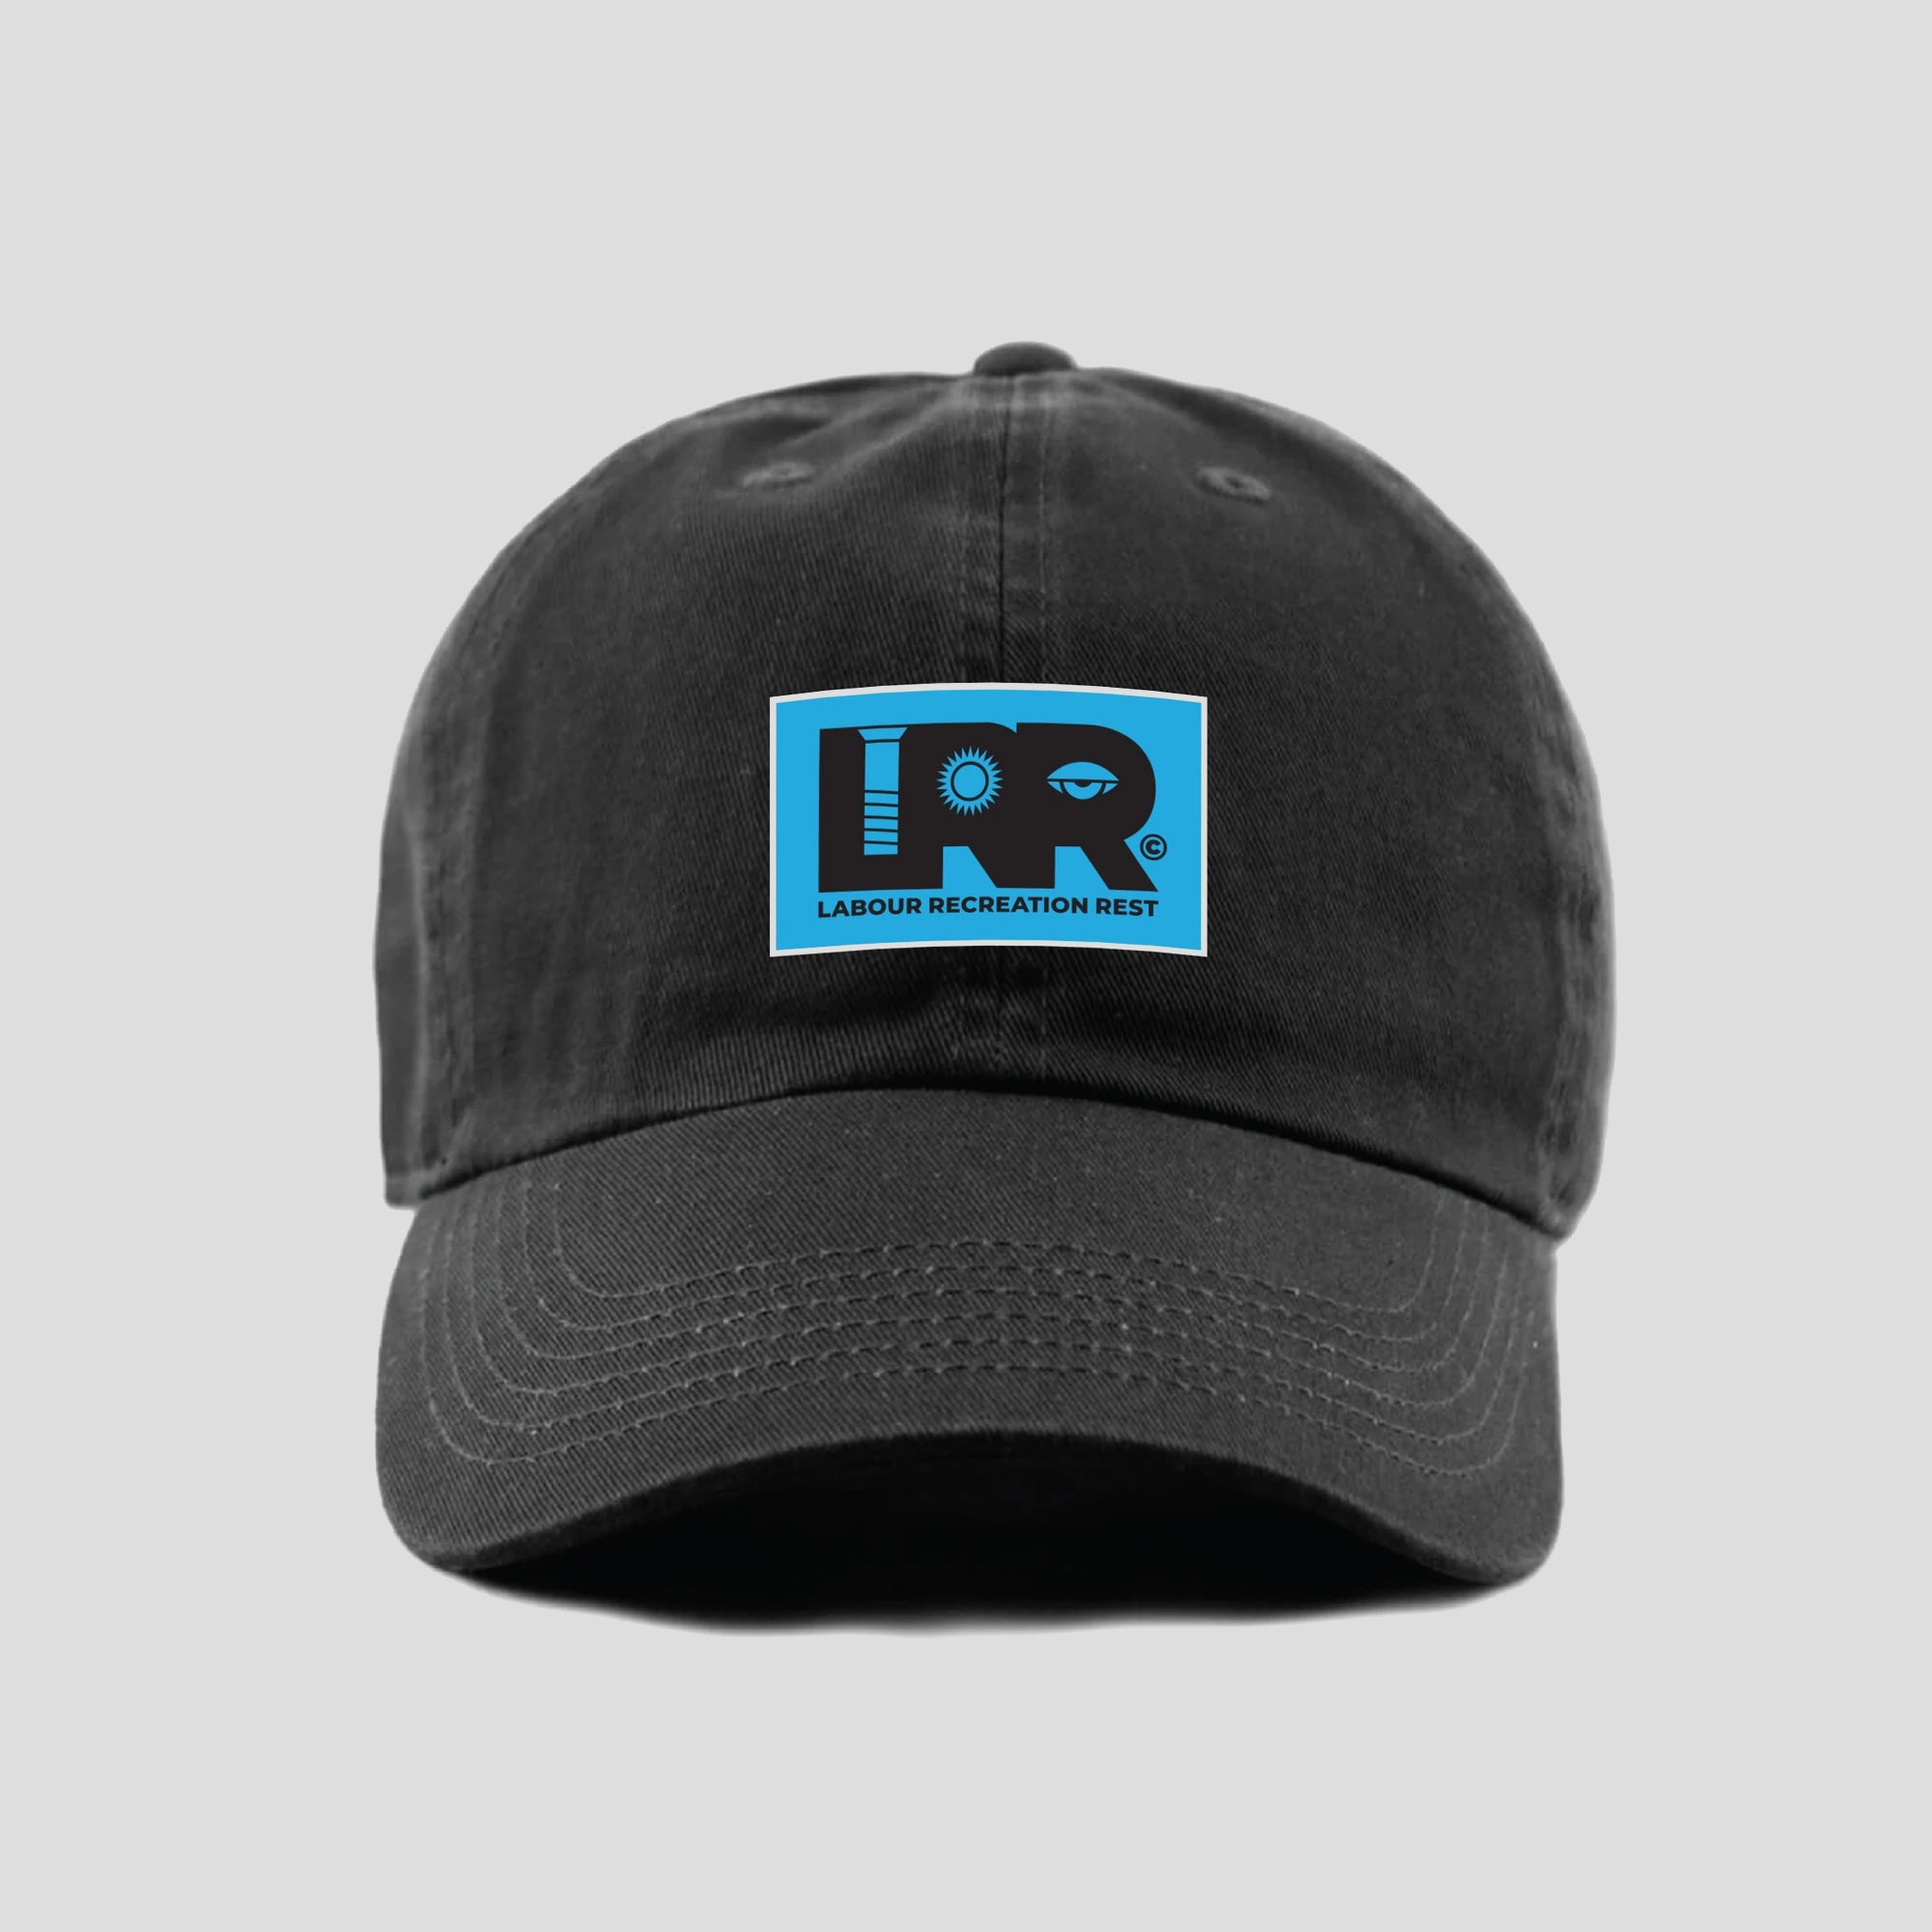 LABOUR RECREATION REST "LRR" CAP BLACK